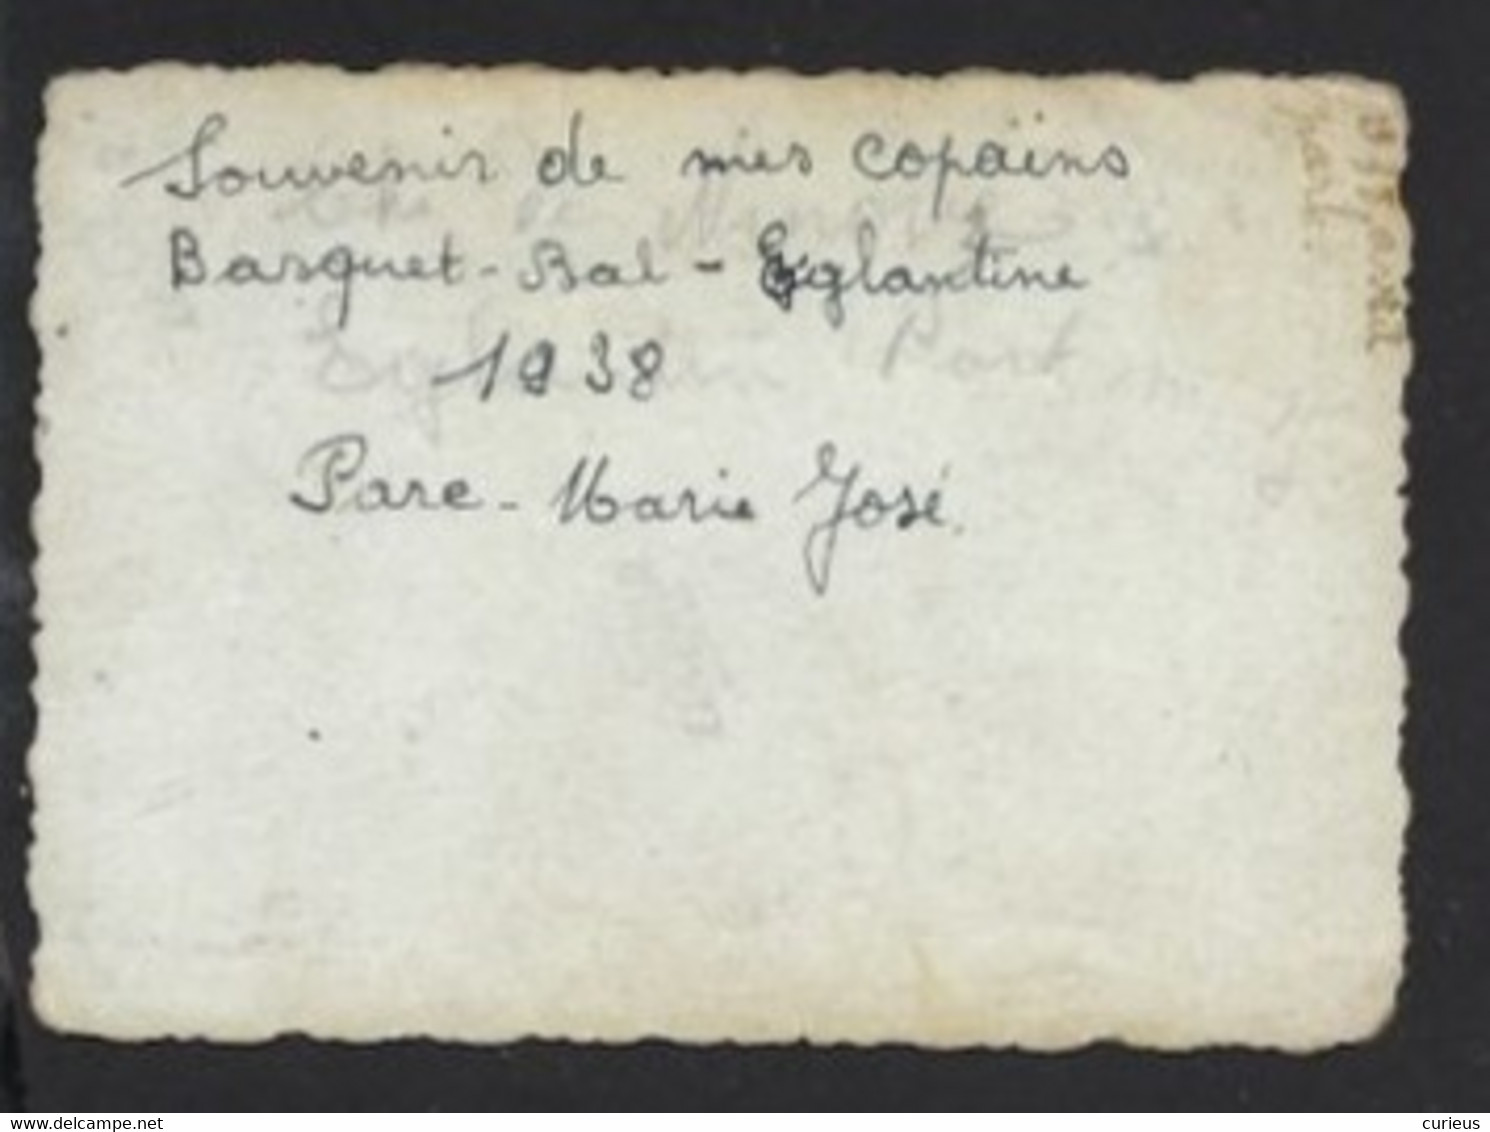 SOUVENIR DE MES COPAINS BASQUET BAL EGLANTINE * 1938 * PARC MARIE JOSE * MOLENBEEK ST JEAN * 8.5 X 6 CM - Sport